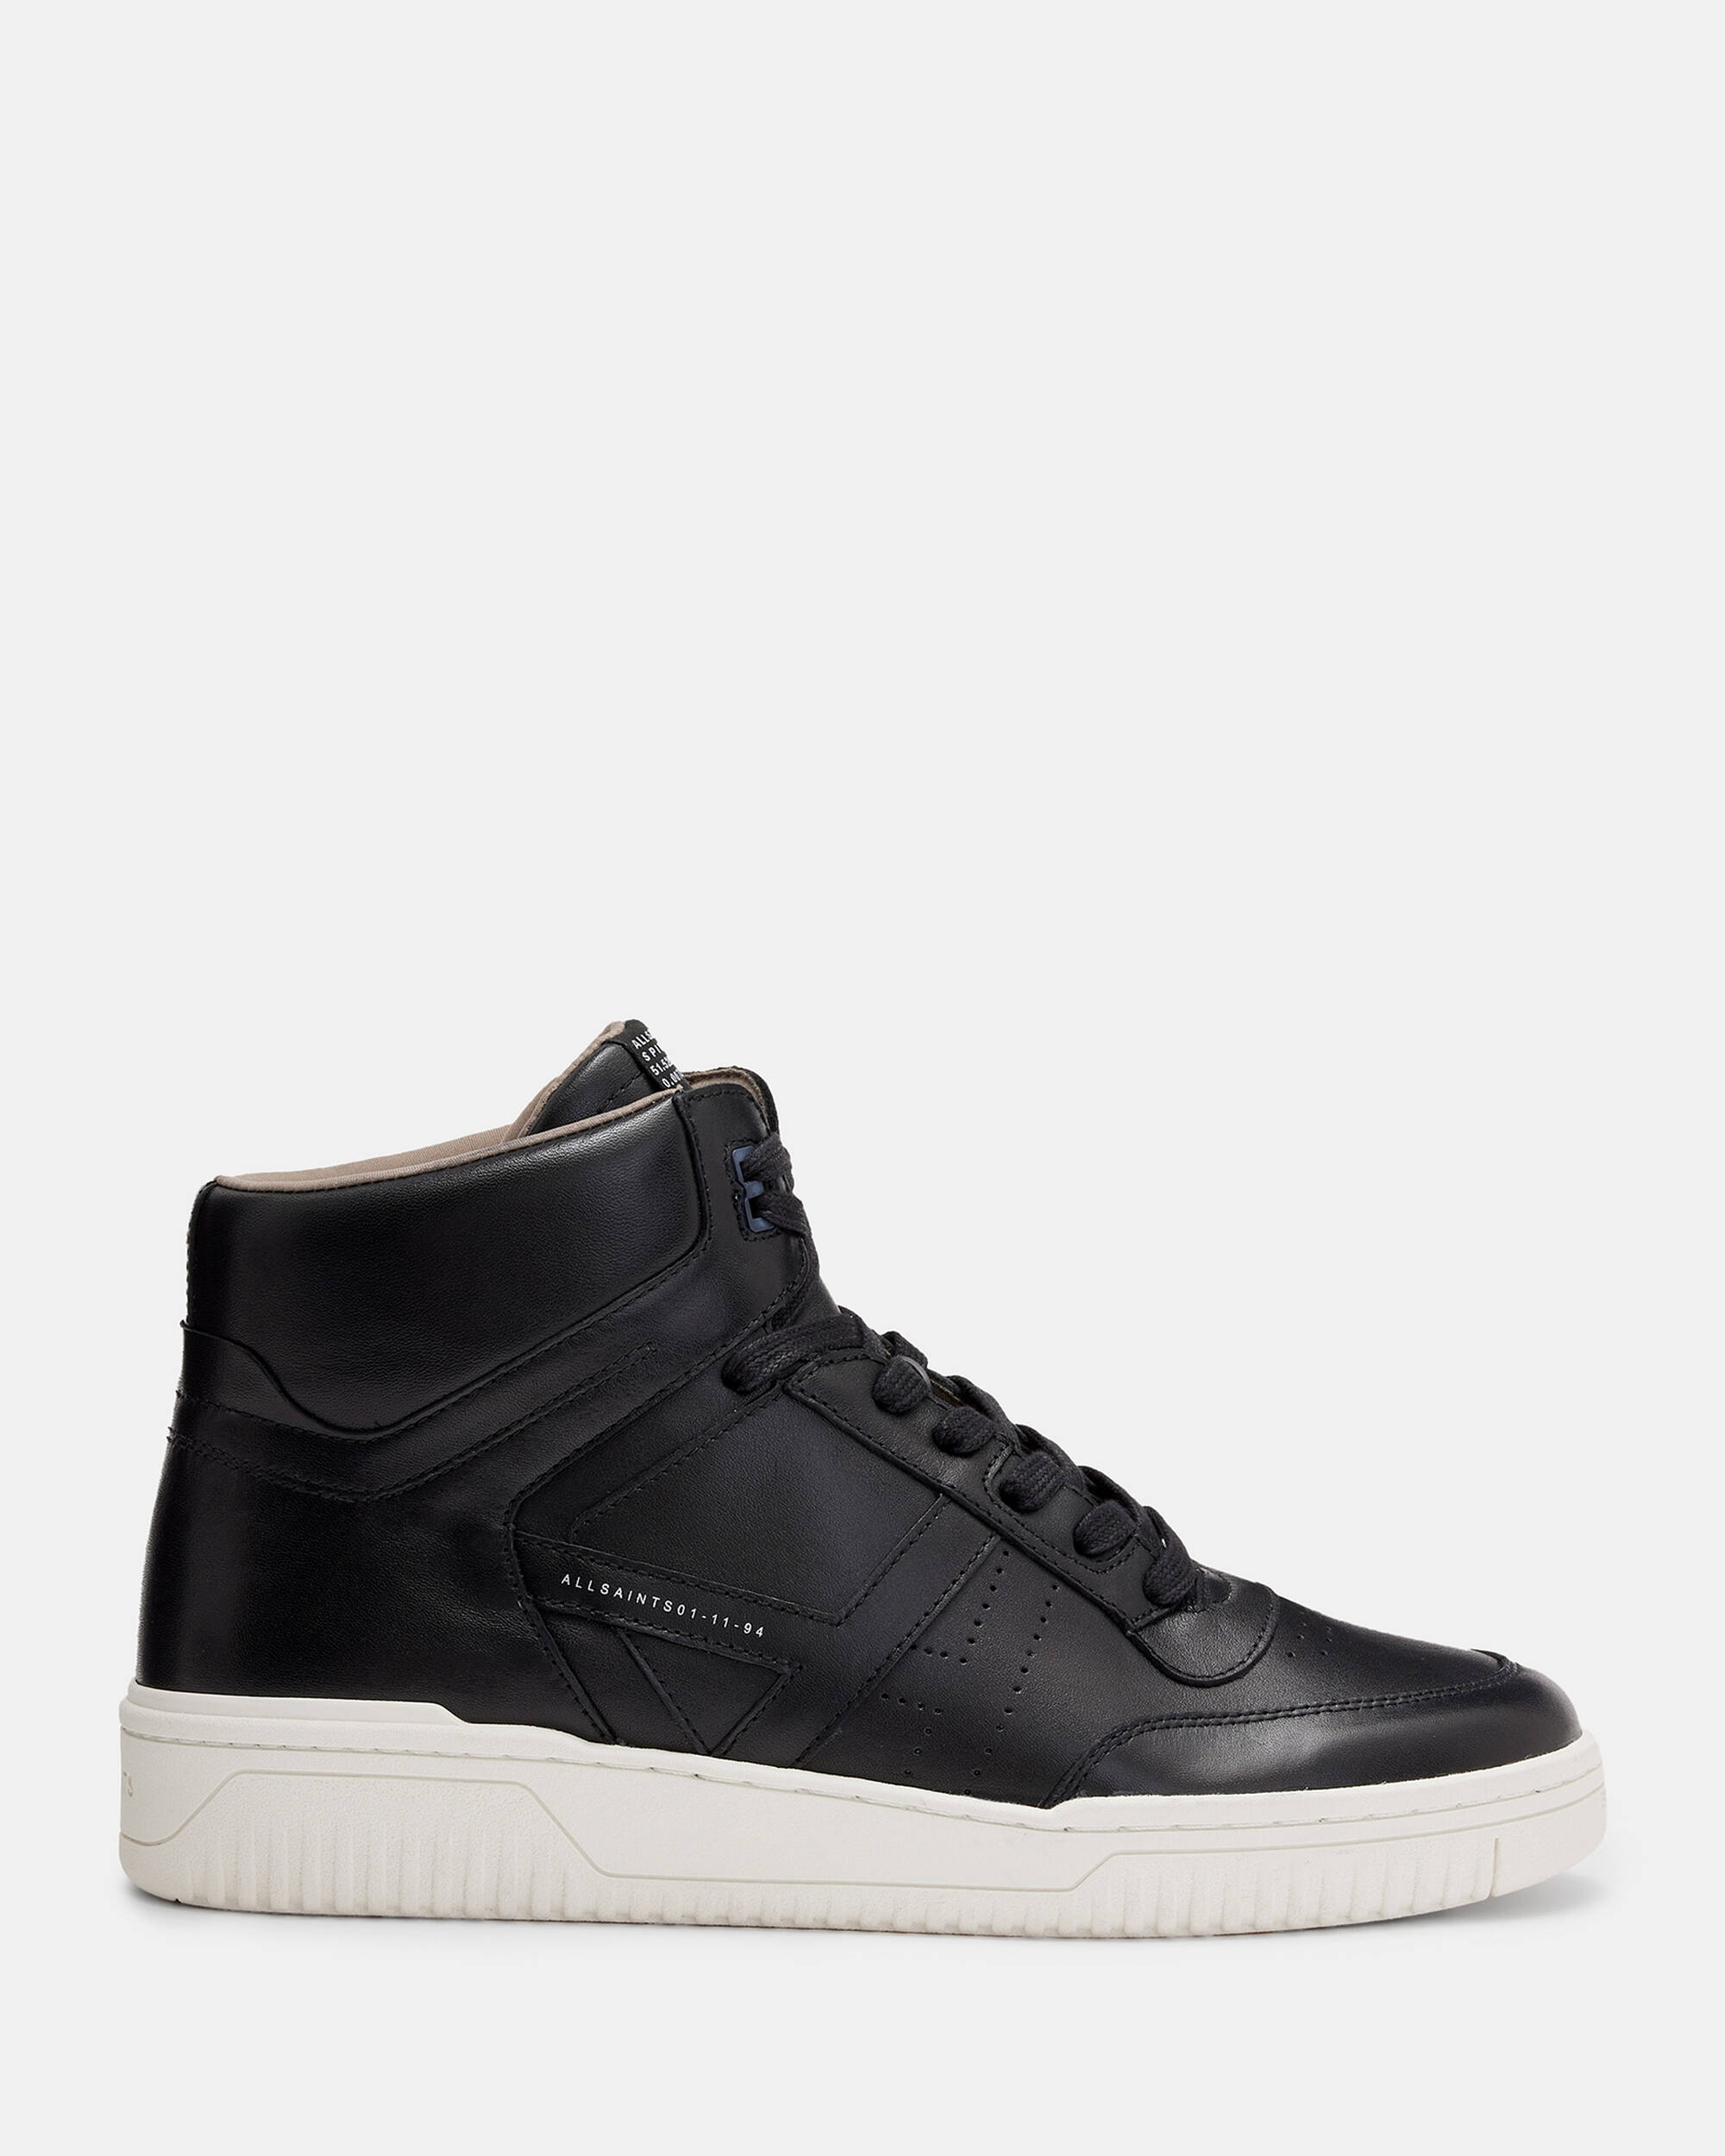 Achtervolging Paine Gillic schoonmaken Pro Leather High Top Sneakers Black | ALLSAINTS US